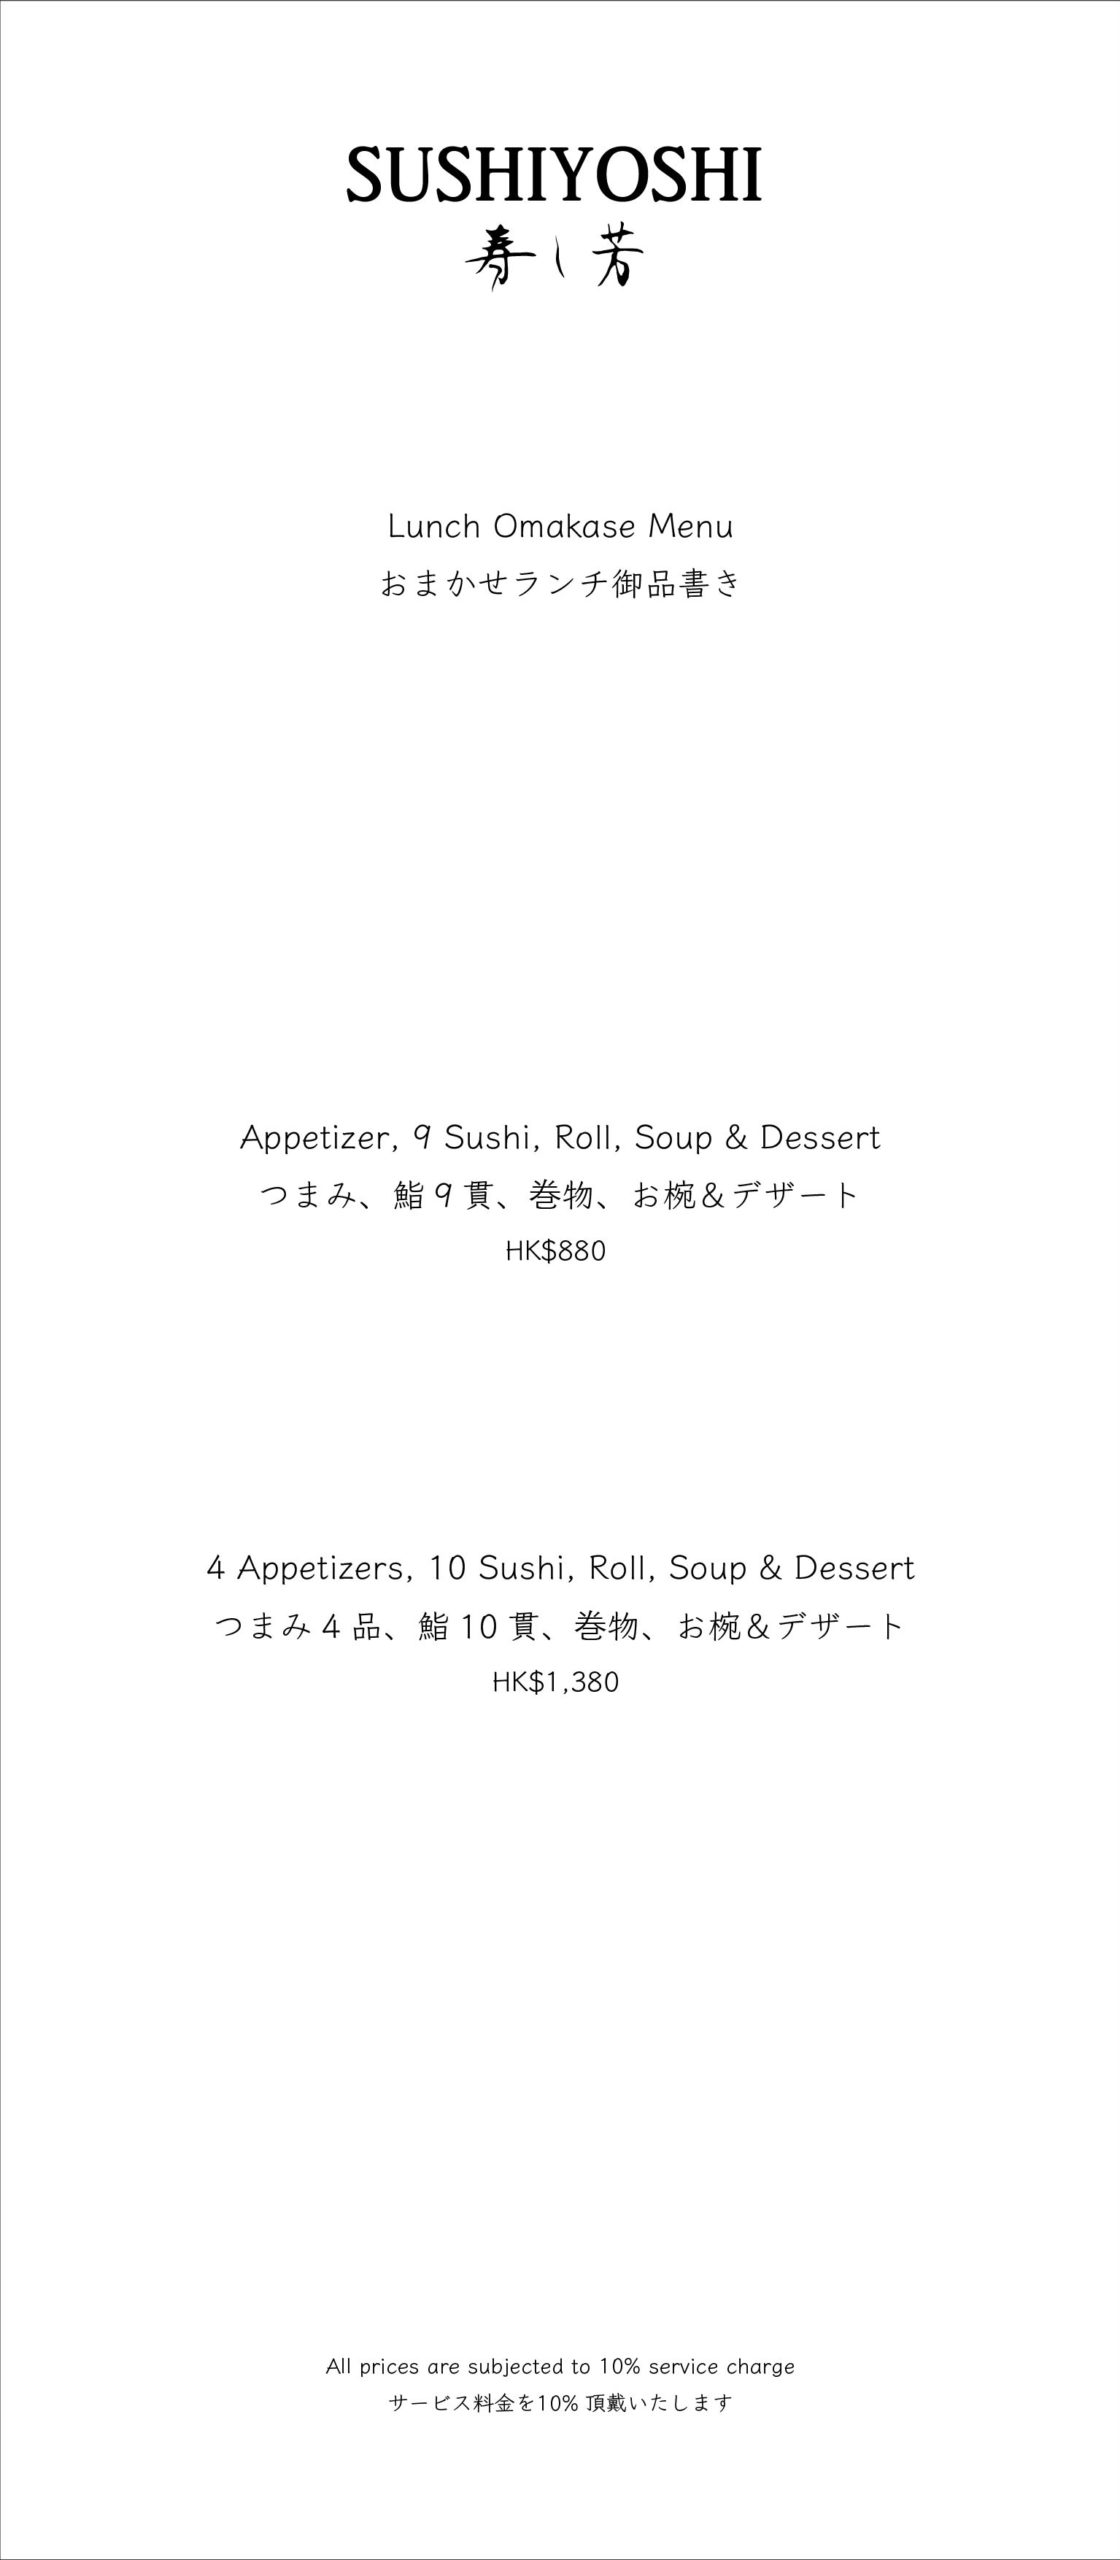 Sushiyoshi menu